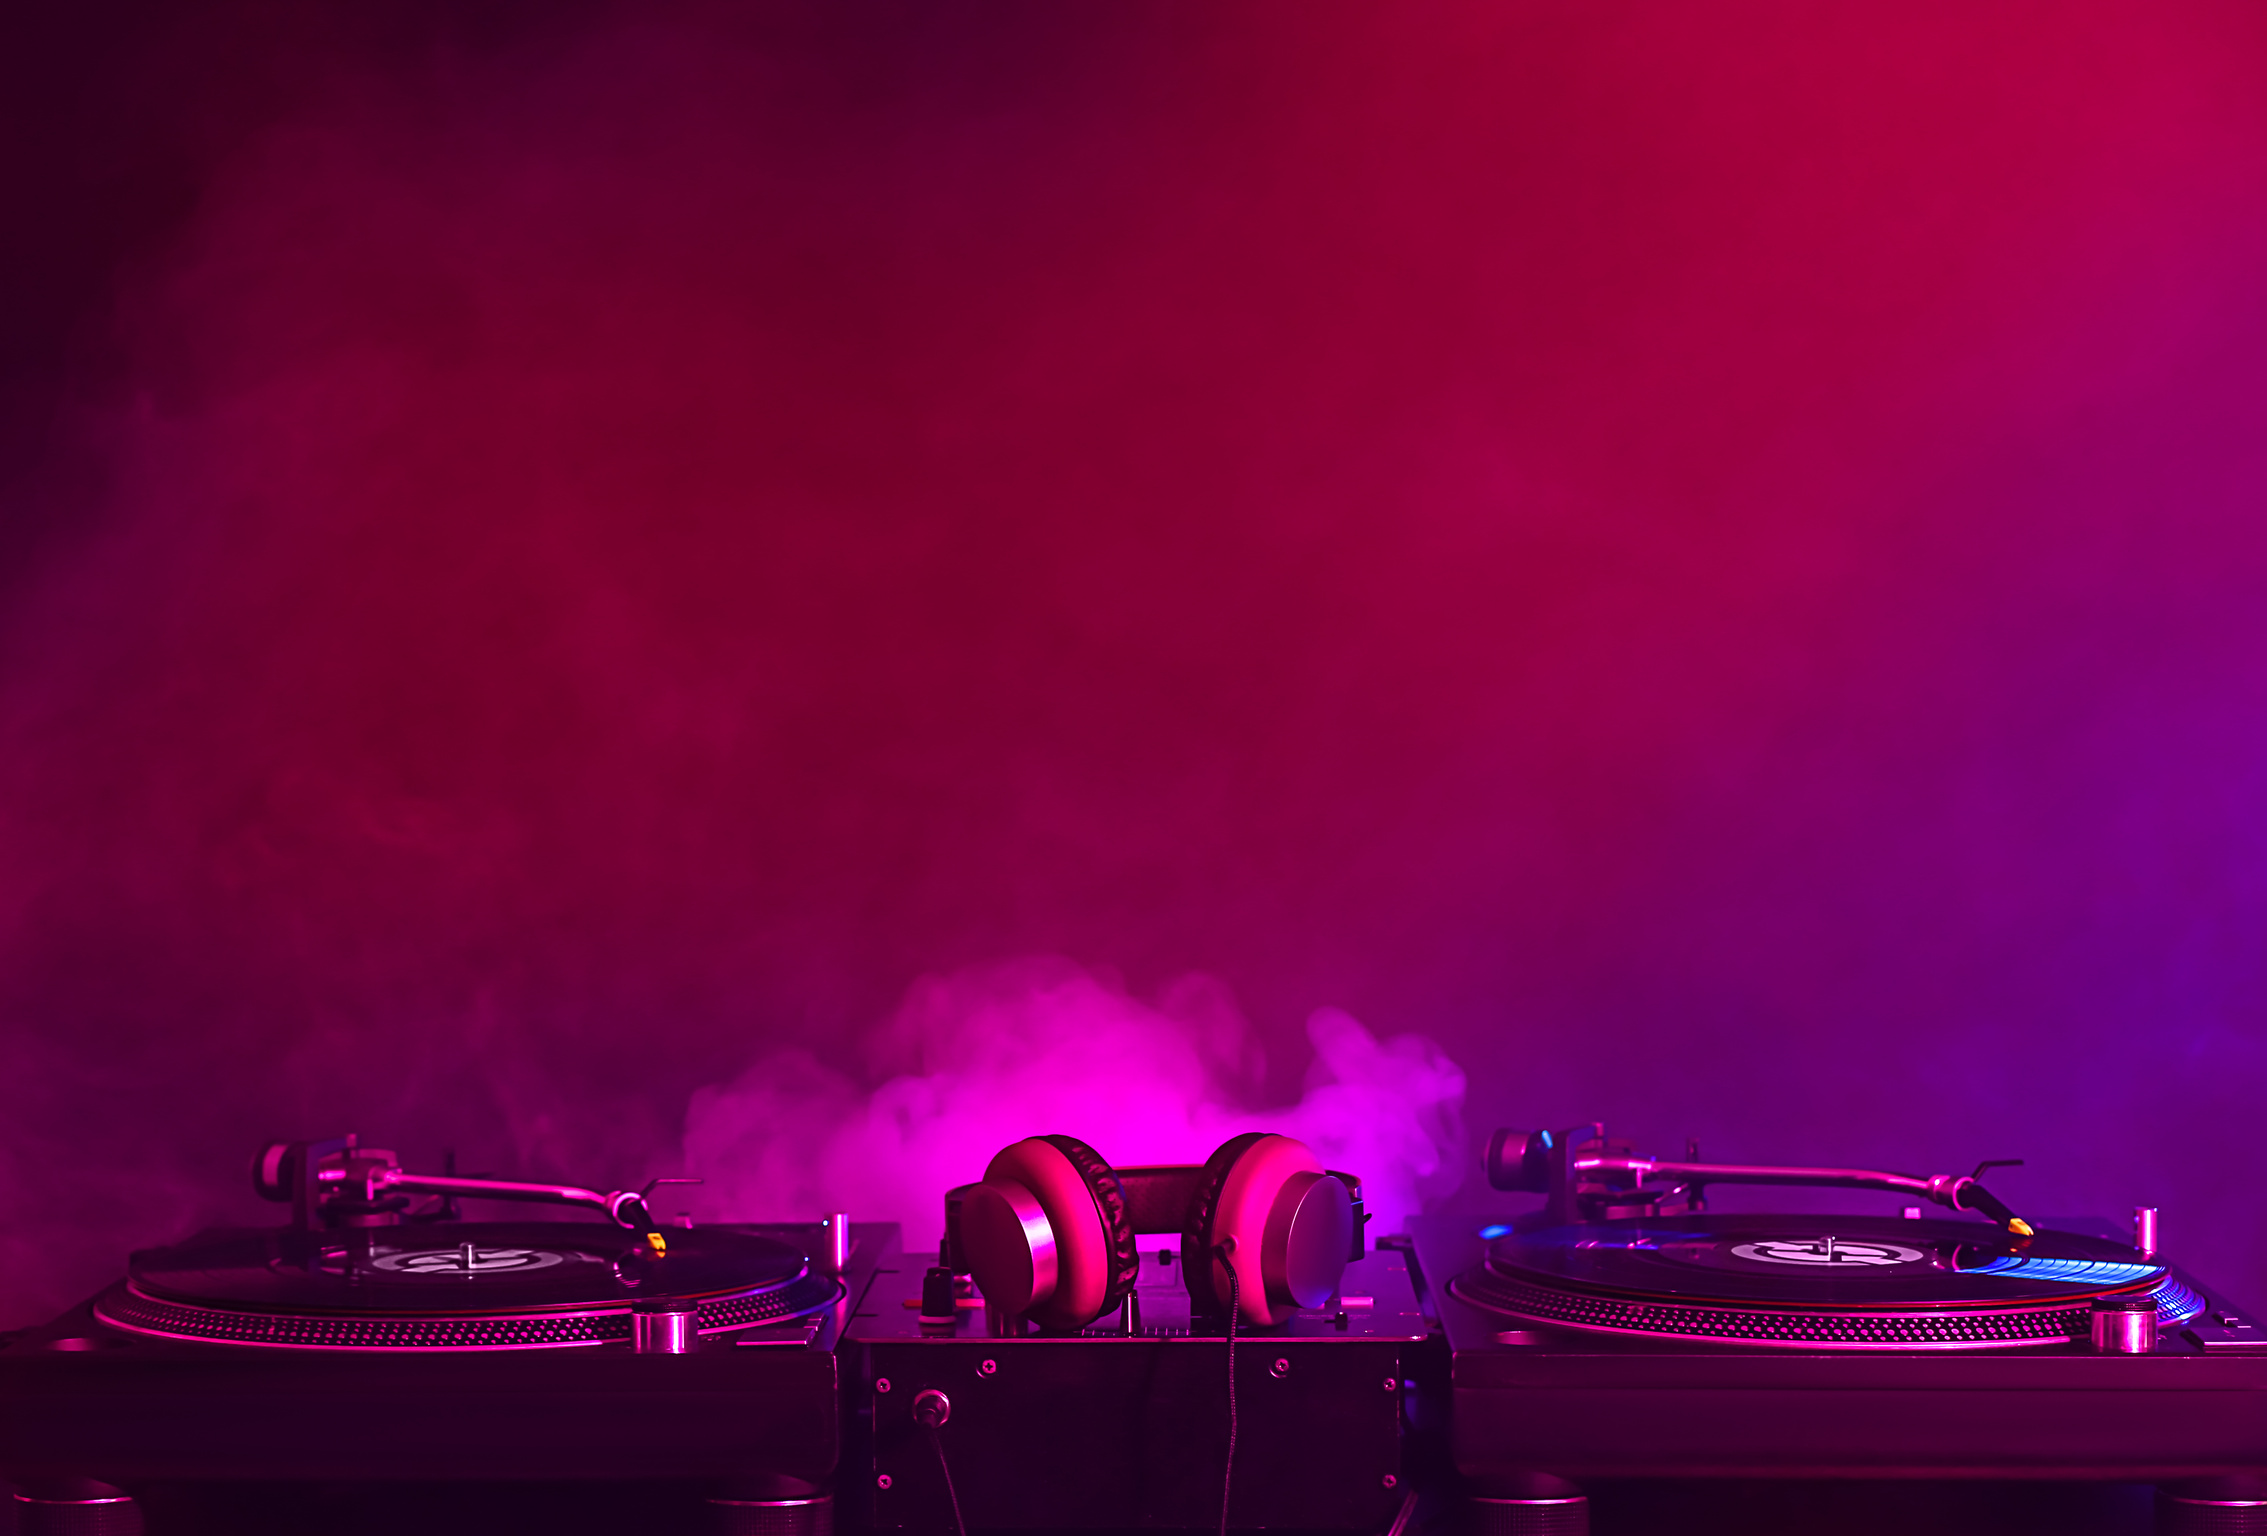 Modern DJ Mixer on Dark Background